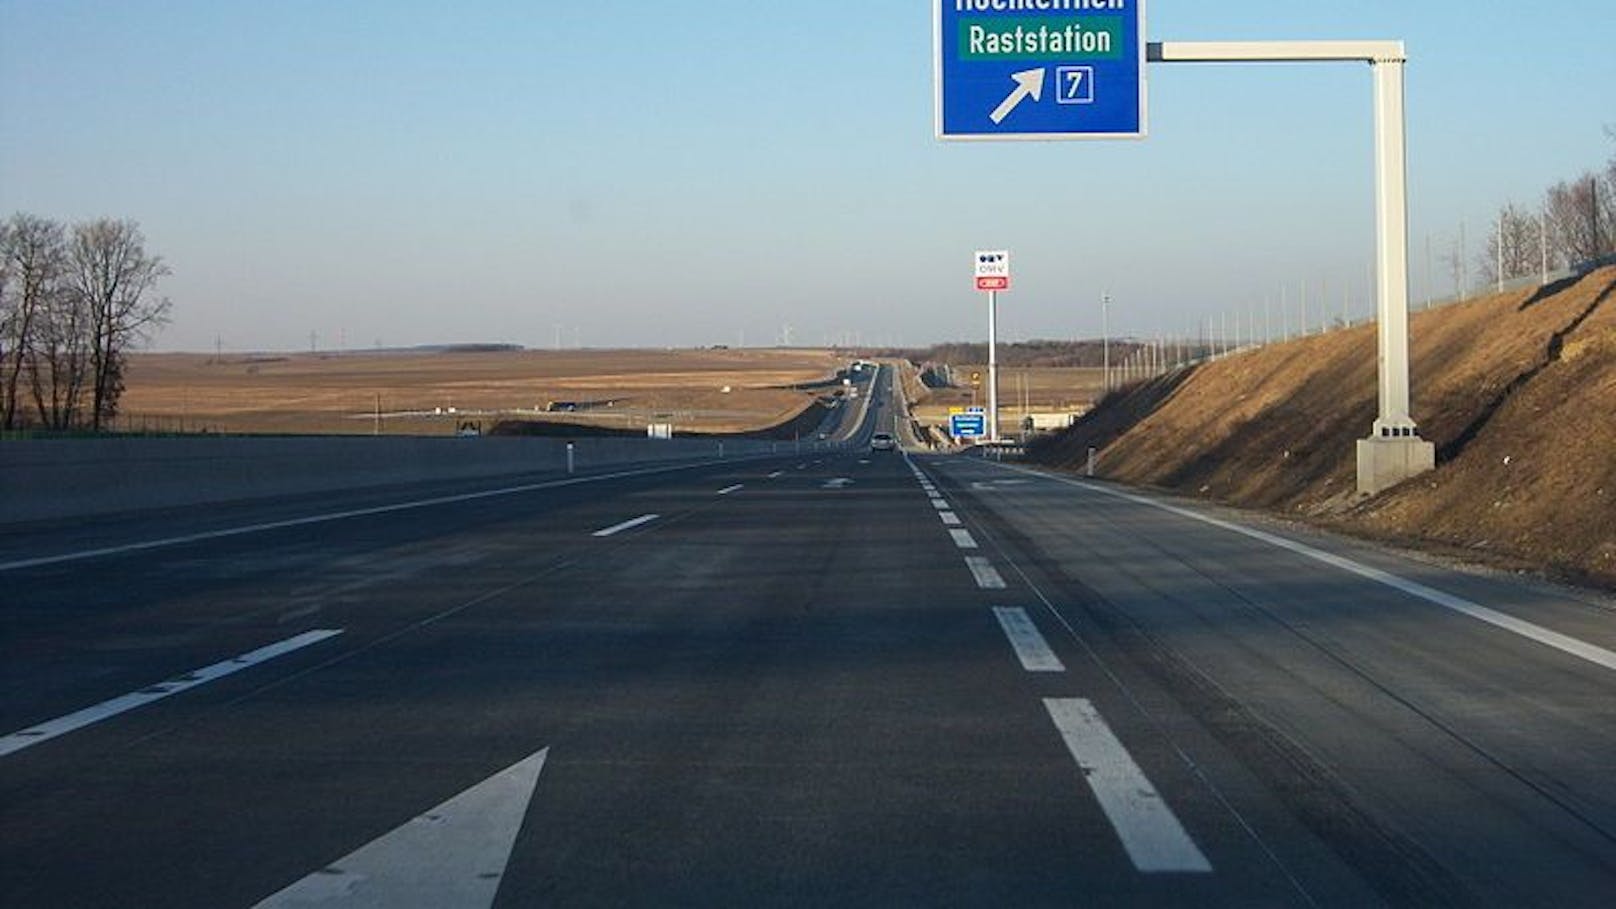 Wiener bretterte mit 203 km/h über die Nordautobahn